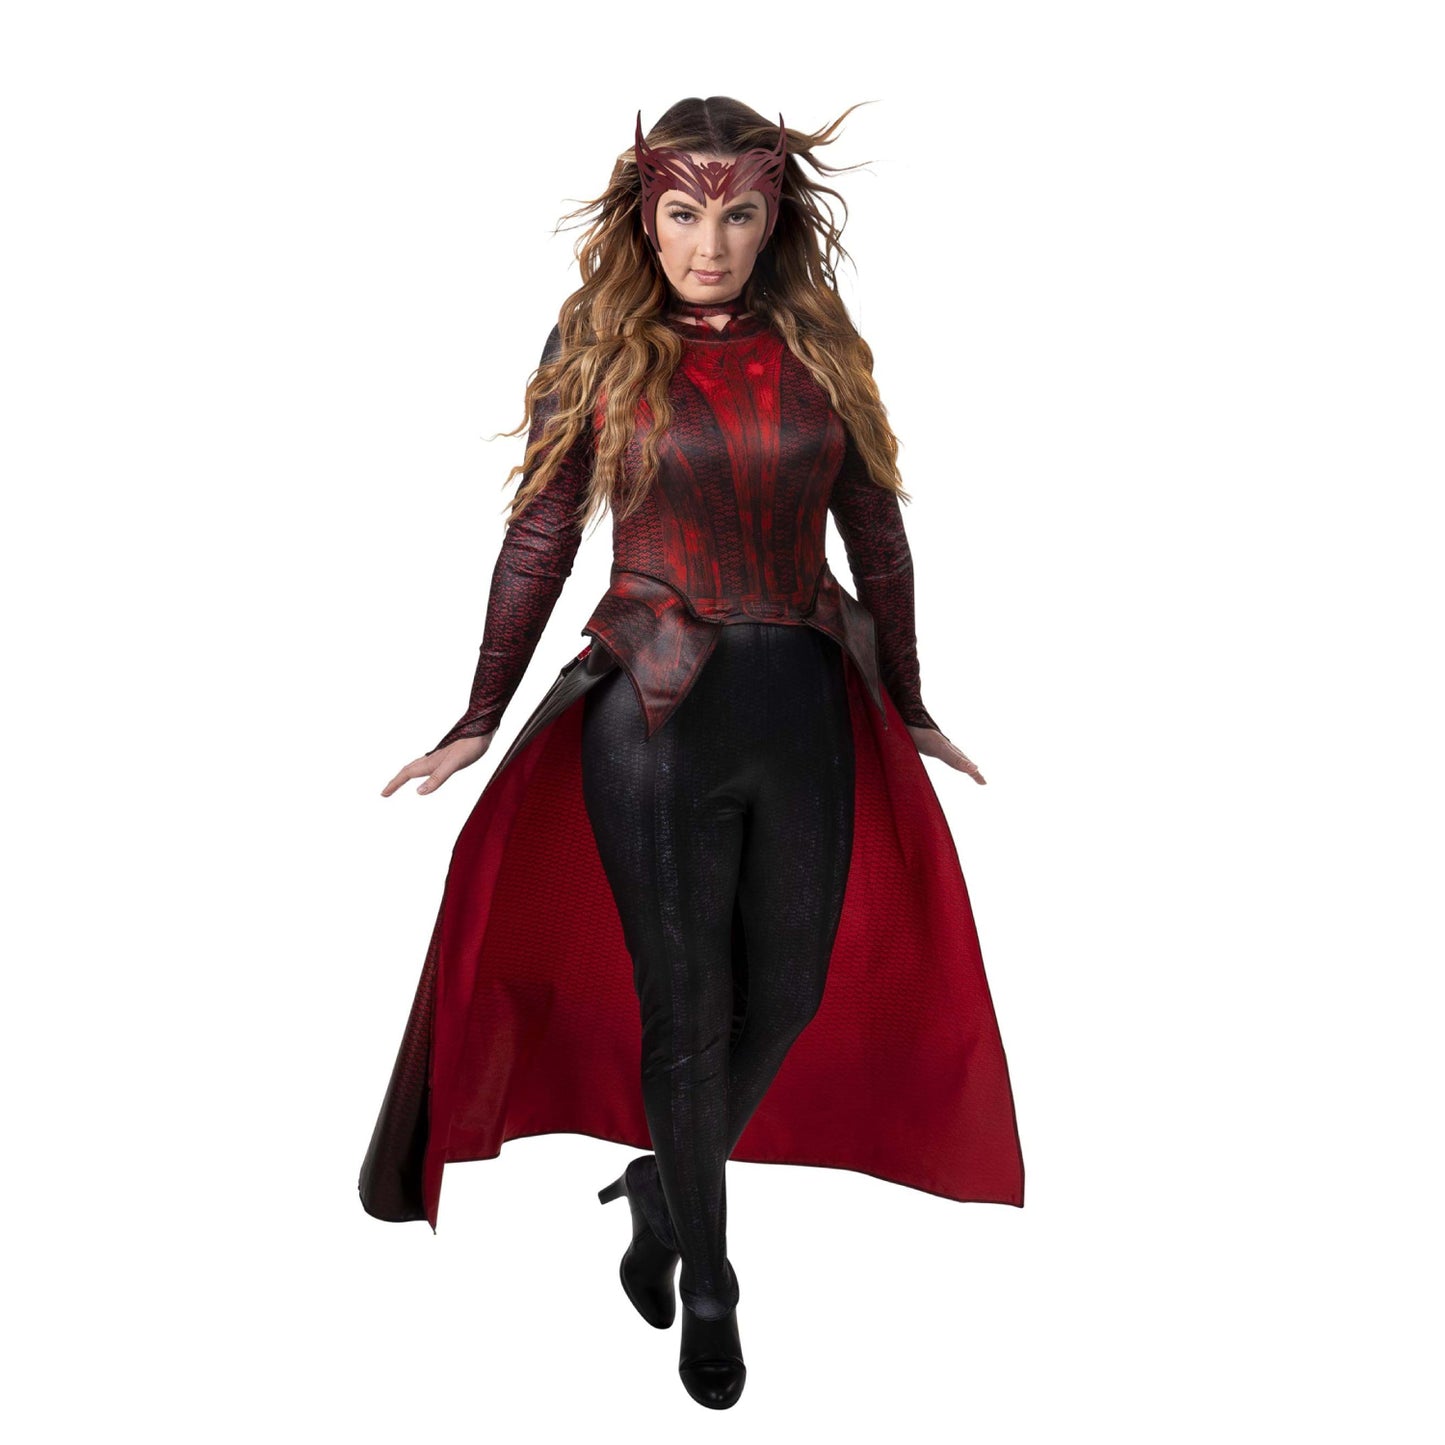 Scarlet Witch / Wanda